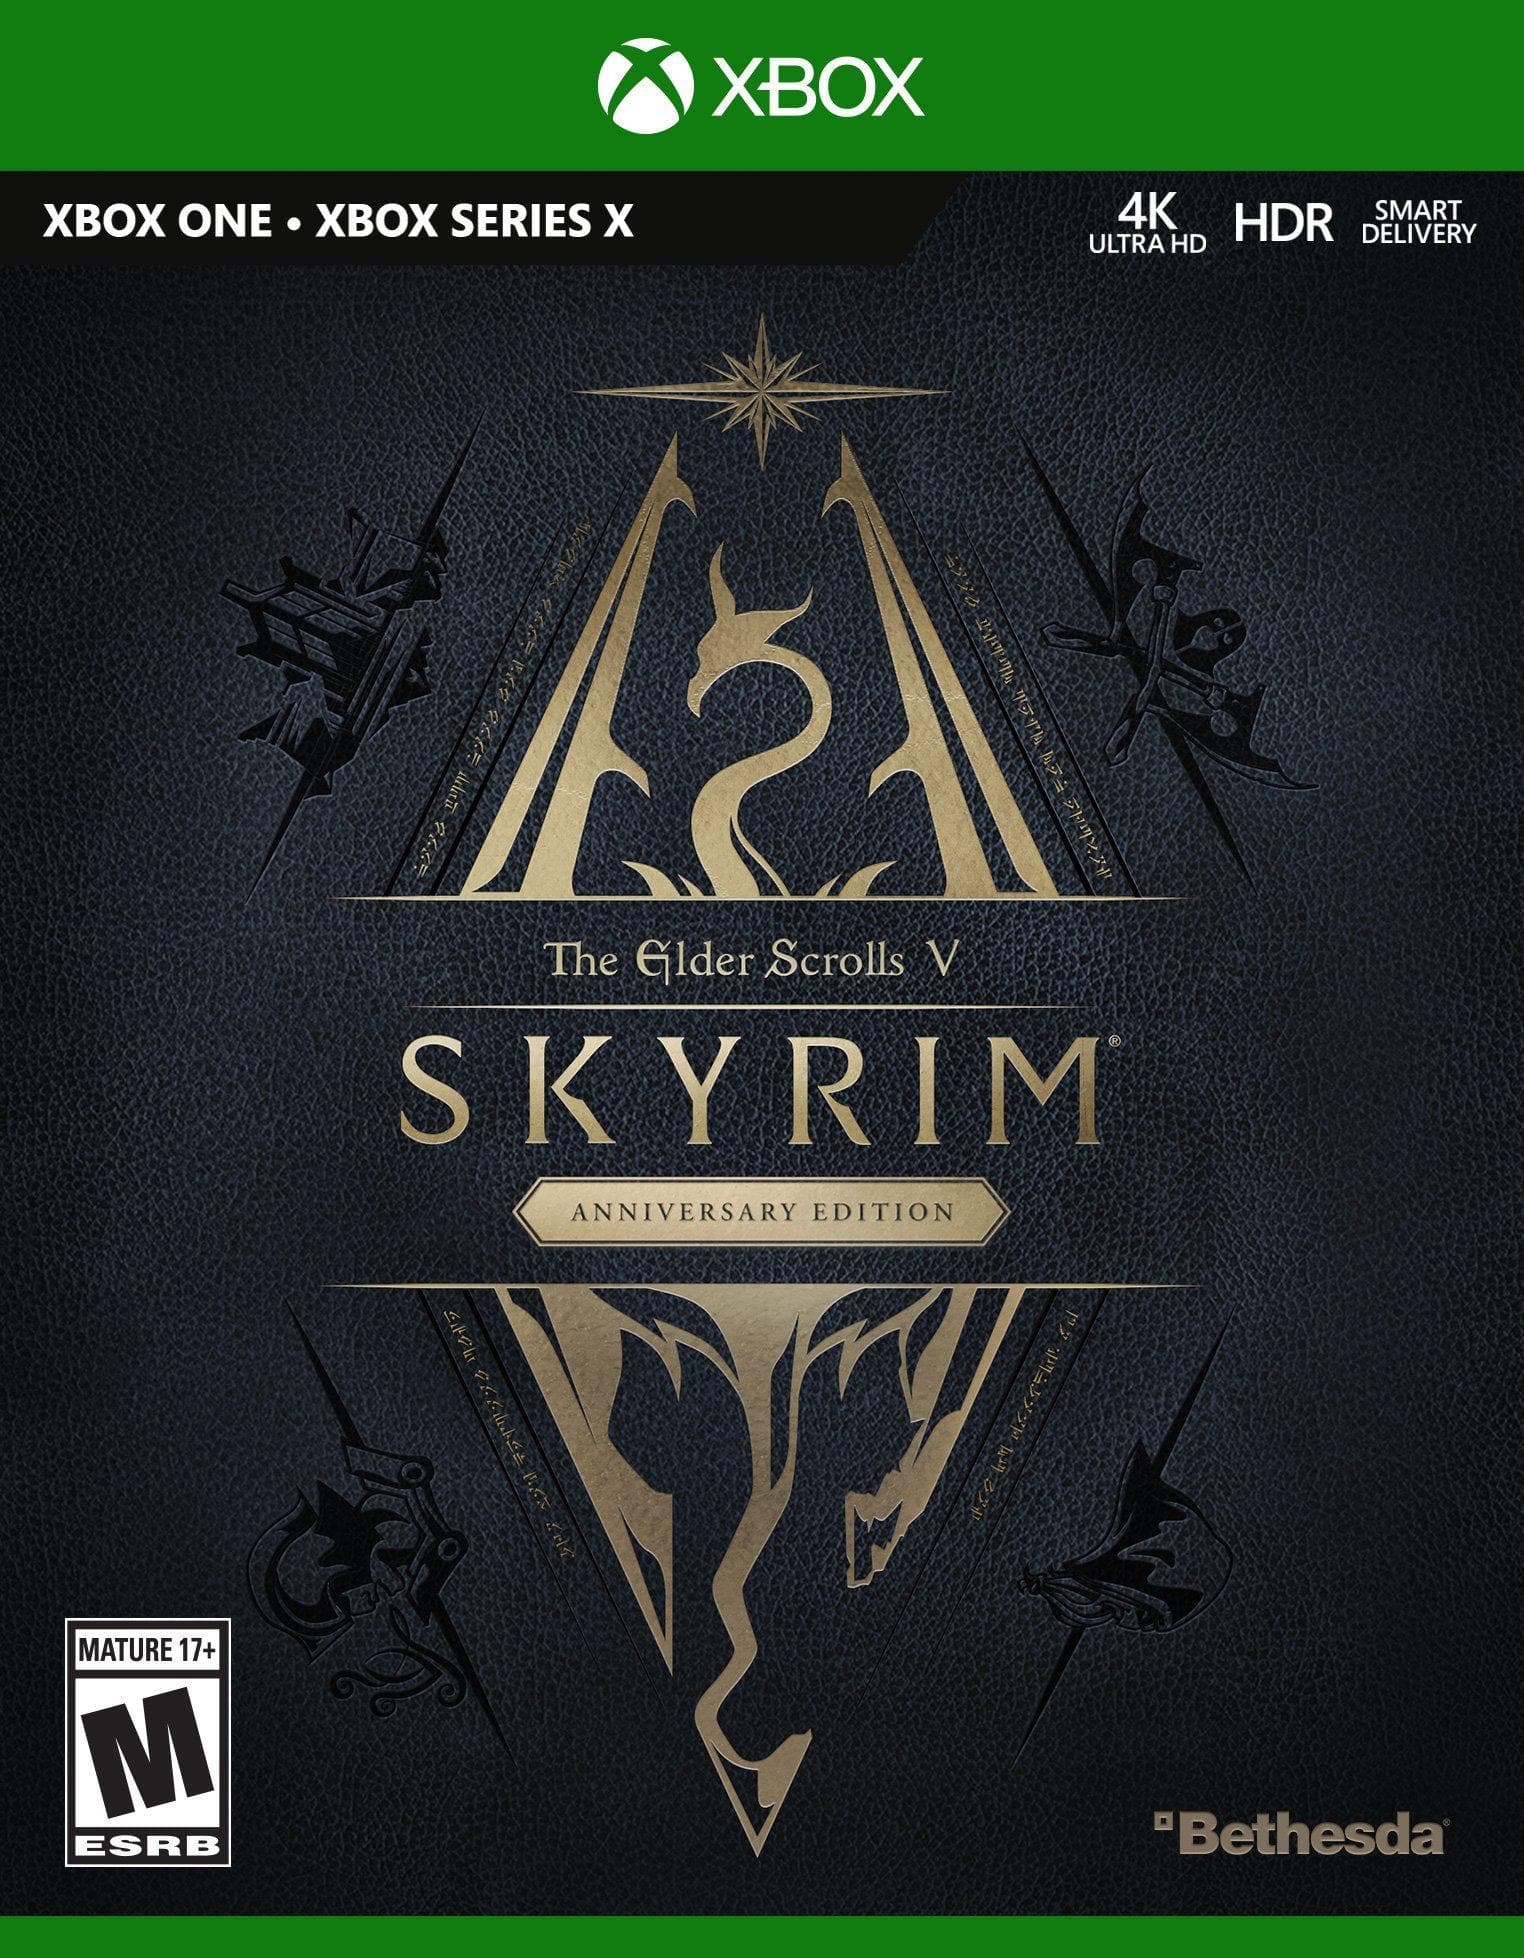 The Elder Scrolls V: Skyrim (Anniversary Edition) - Xbox One | Series X/S - EXON - גיימינג ותוכנות - משחקים ותוכנות למחשב ולאקס בוקס!